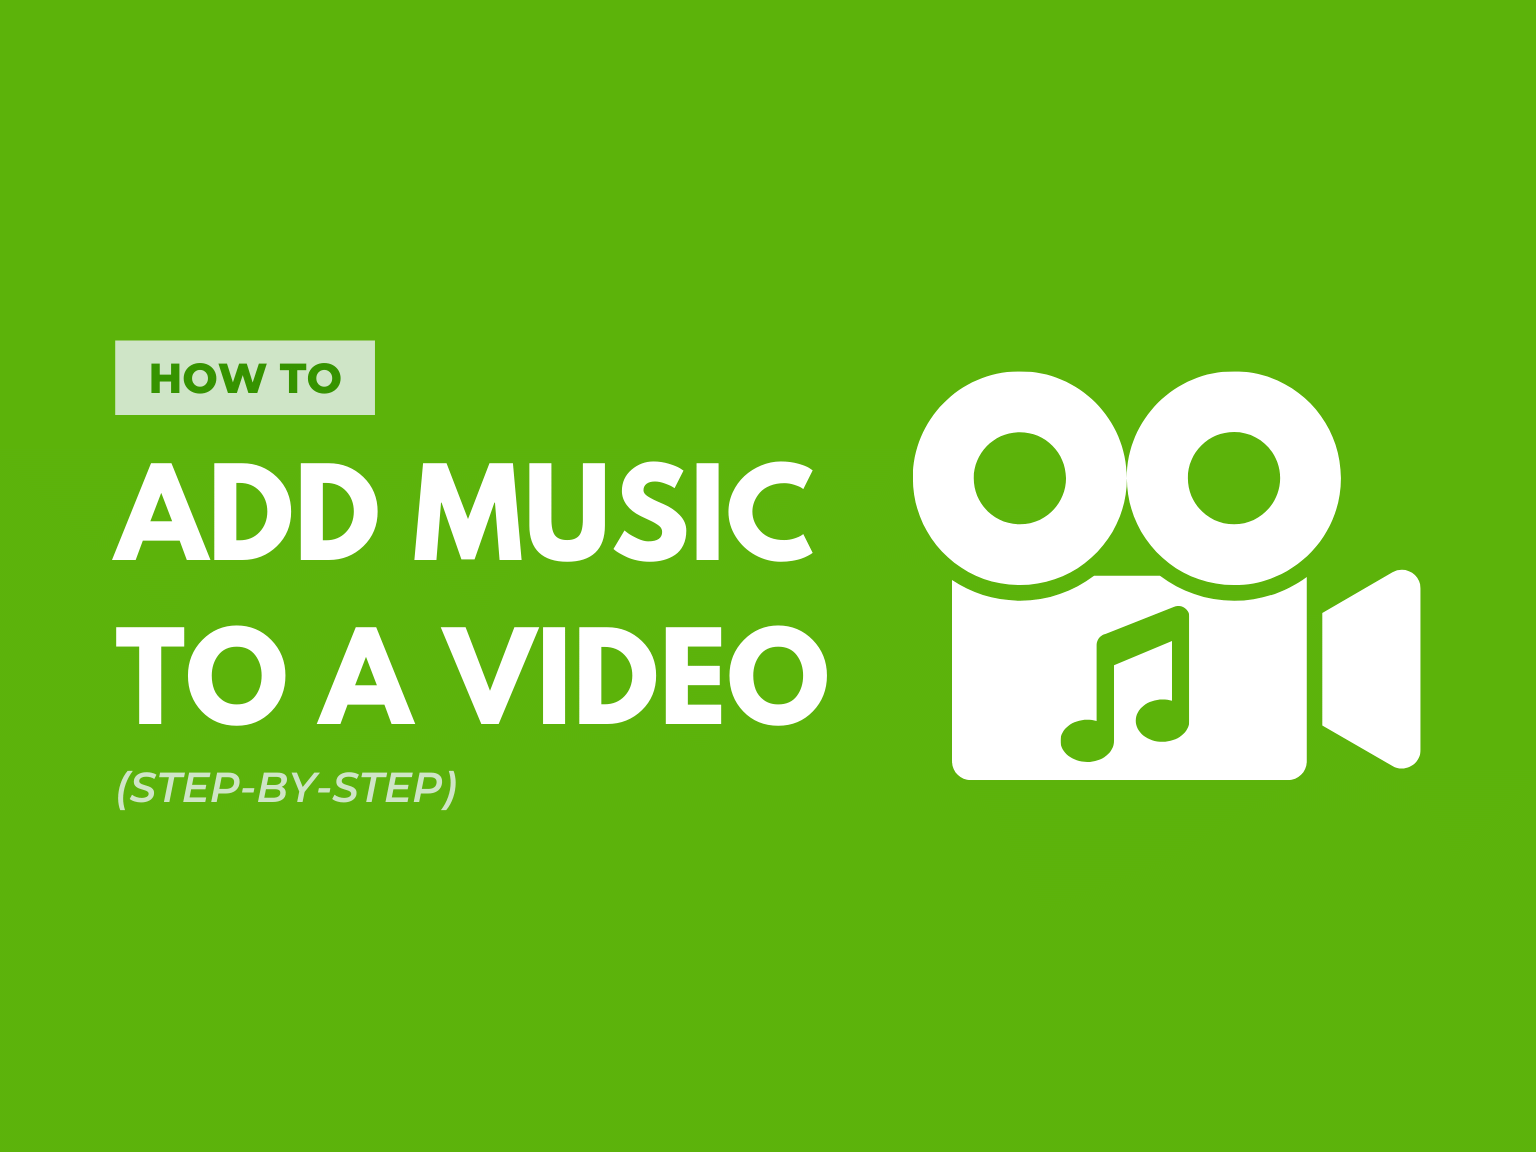 Hướng dẫn add nhạc vào video dễ dàng và đơn giản hơn bao giờ hết. Cùng nhau xem hình ảnh để tìm hiểu cách thêm âm thanh vào video một cách đơn giản và nhanh chóng.